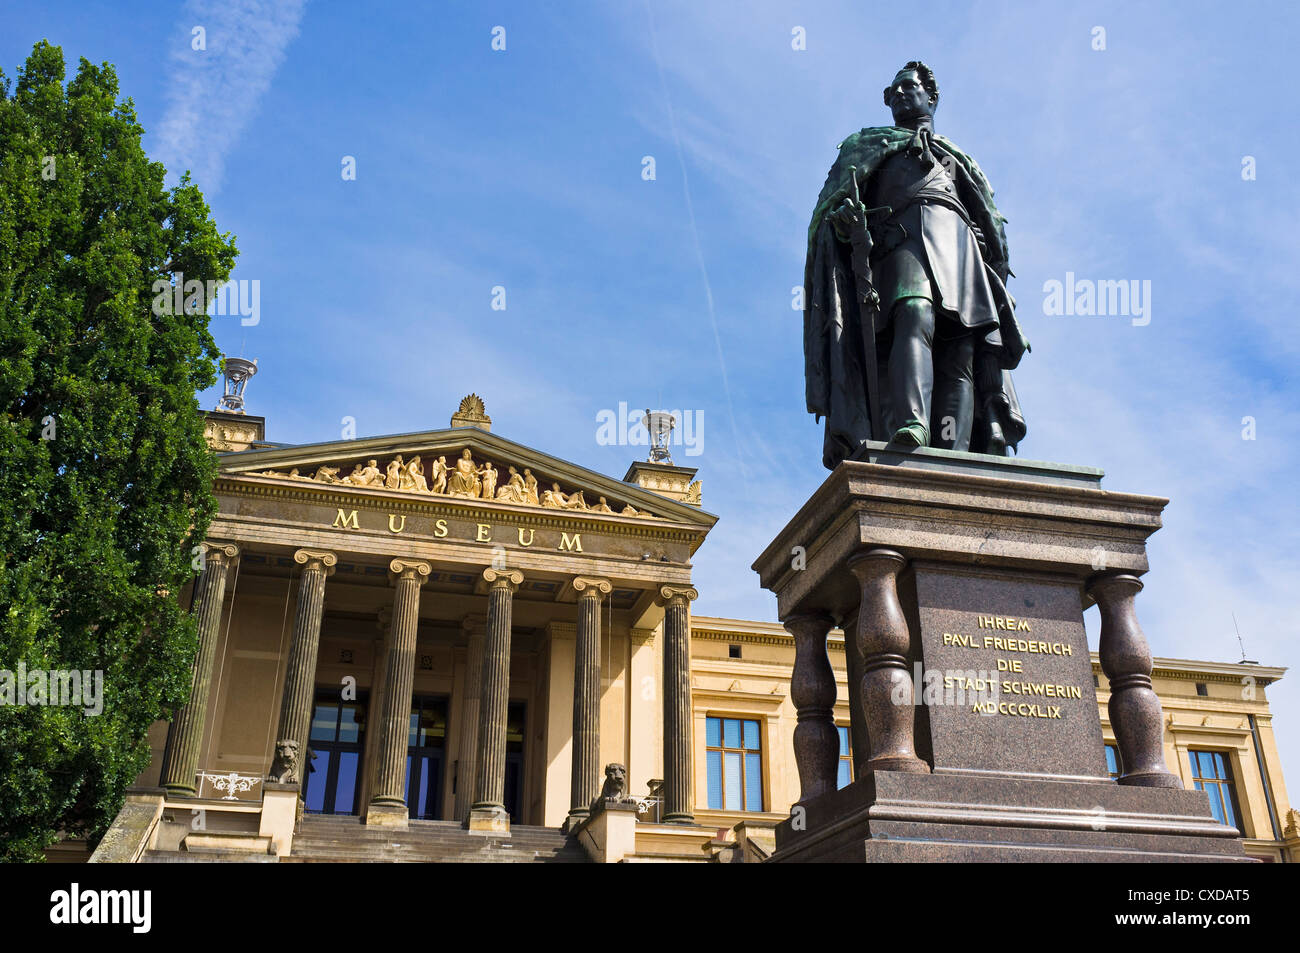 Monumento de Gran Duque Paul Friedrich delante del Museo Estatal de Schwerin, Schwerin, Mecklemburgo-Pomerania Occidental, Alemania Foto de stock